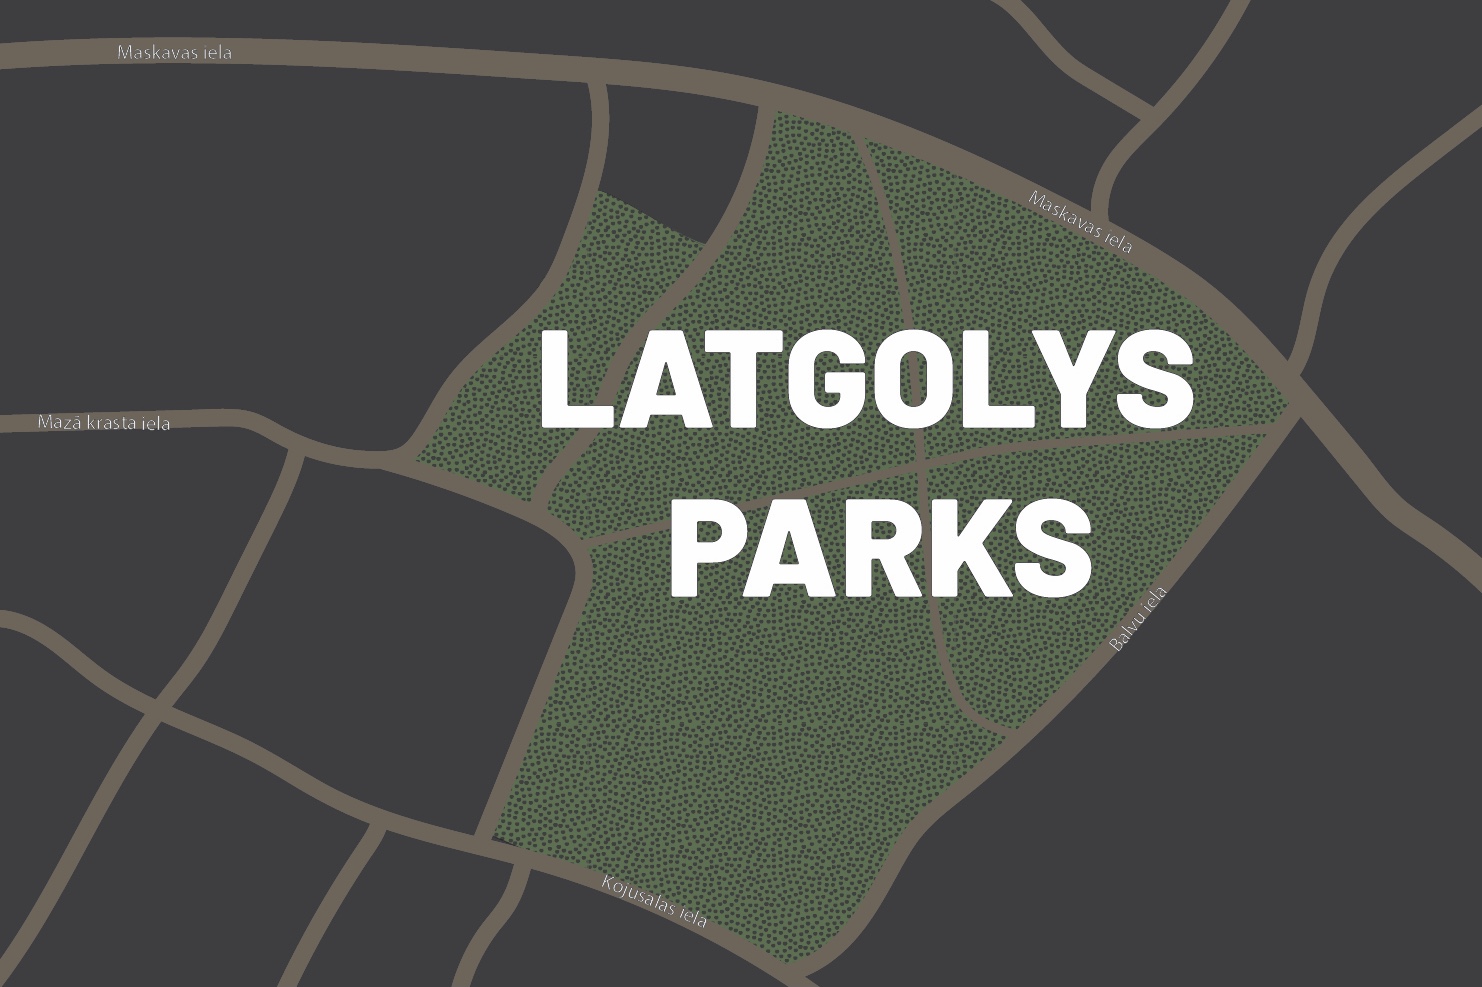 Nūtiks diskuseja par Latgolys parka Reigā atteisteibu iz prīšku